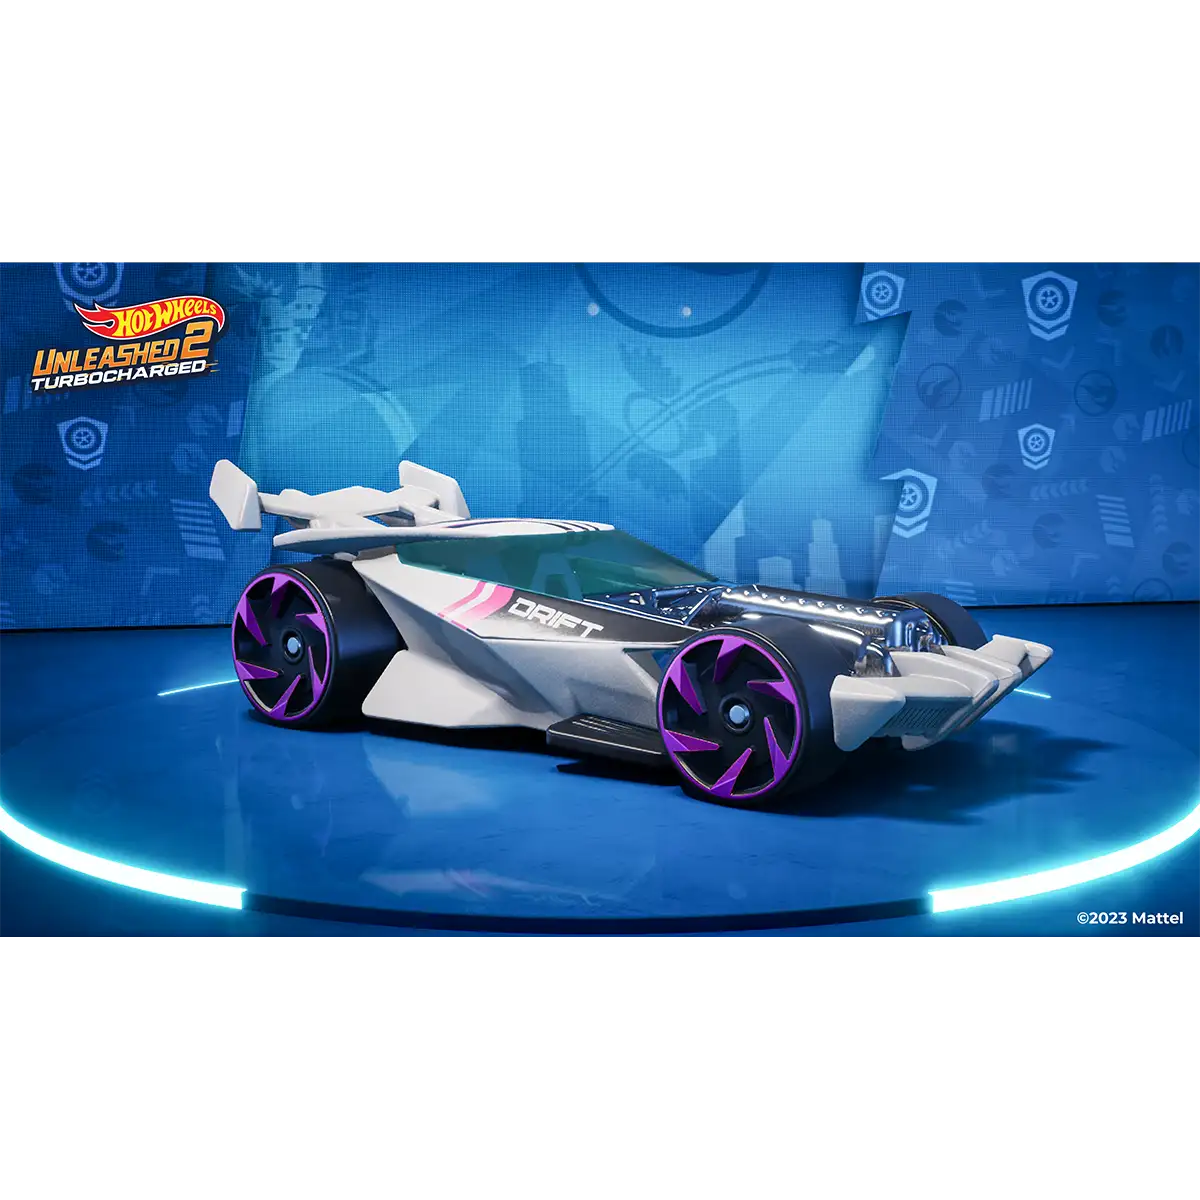 Hot Wheels Unleashed™ 2 Turbocharged (PS5) Image 8